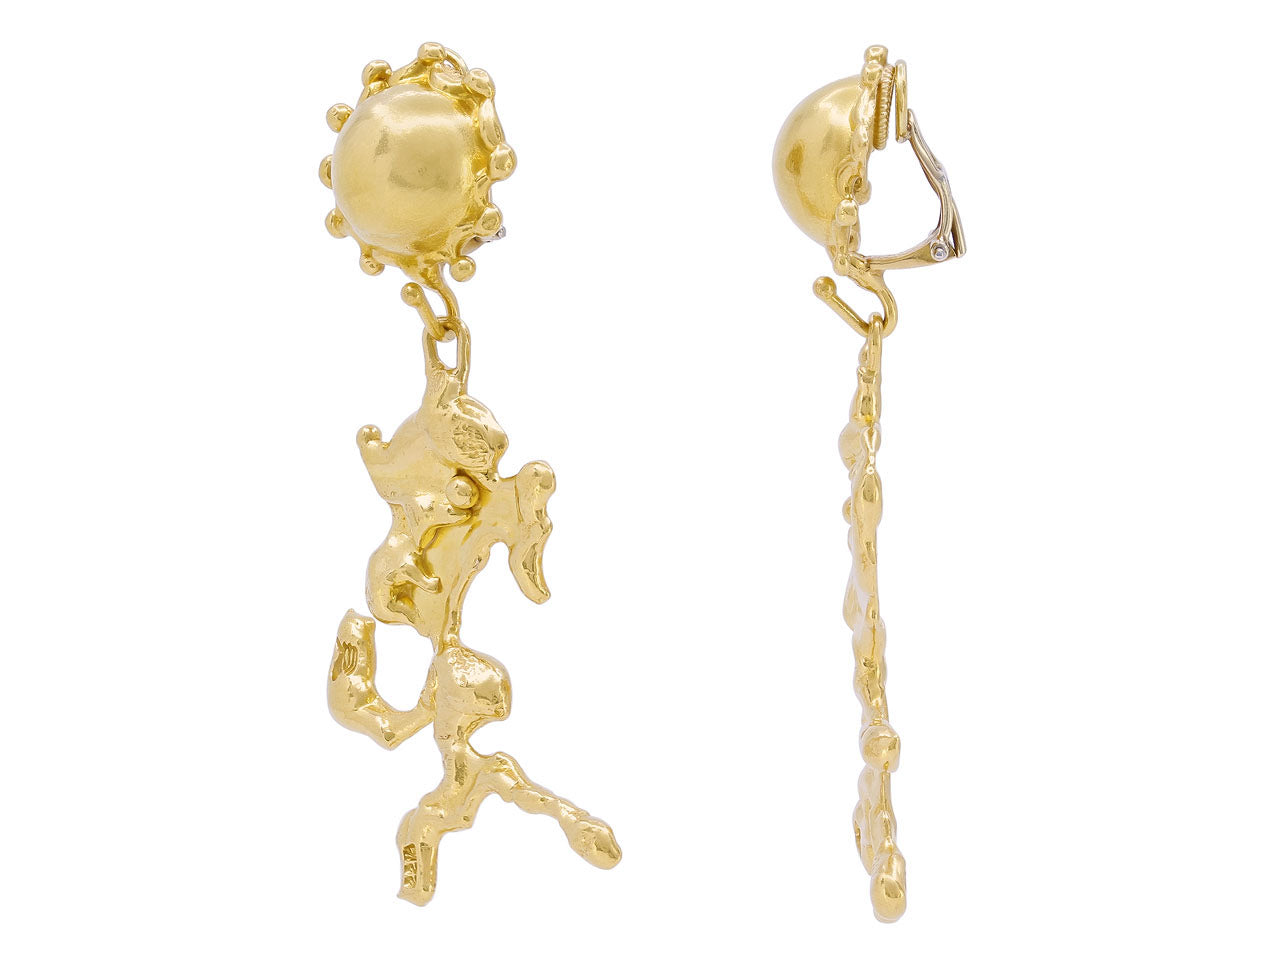 Jean Mahie 'Charming Monsters' Earrings in 22K Gold